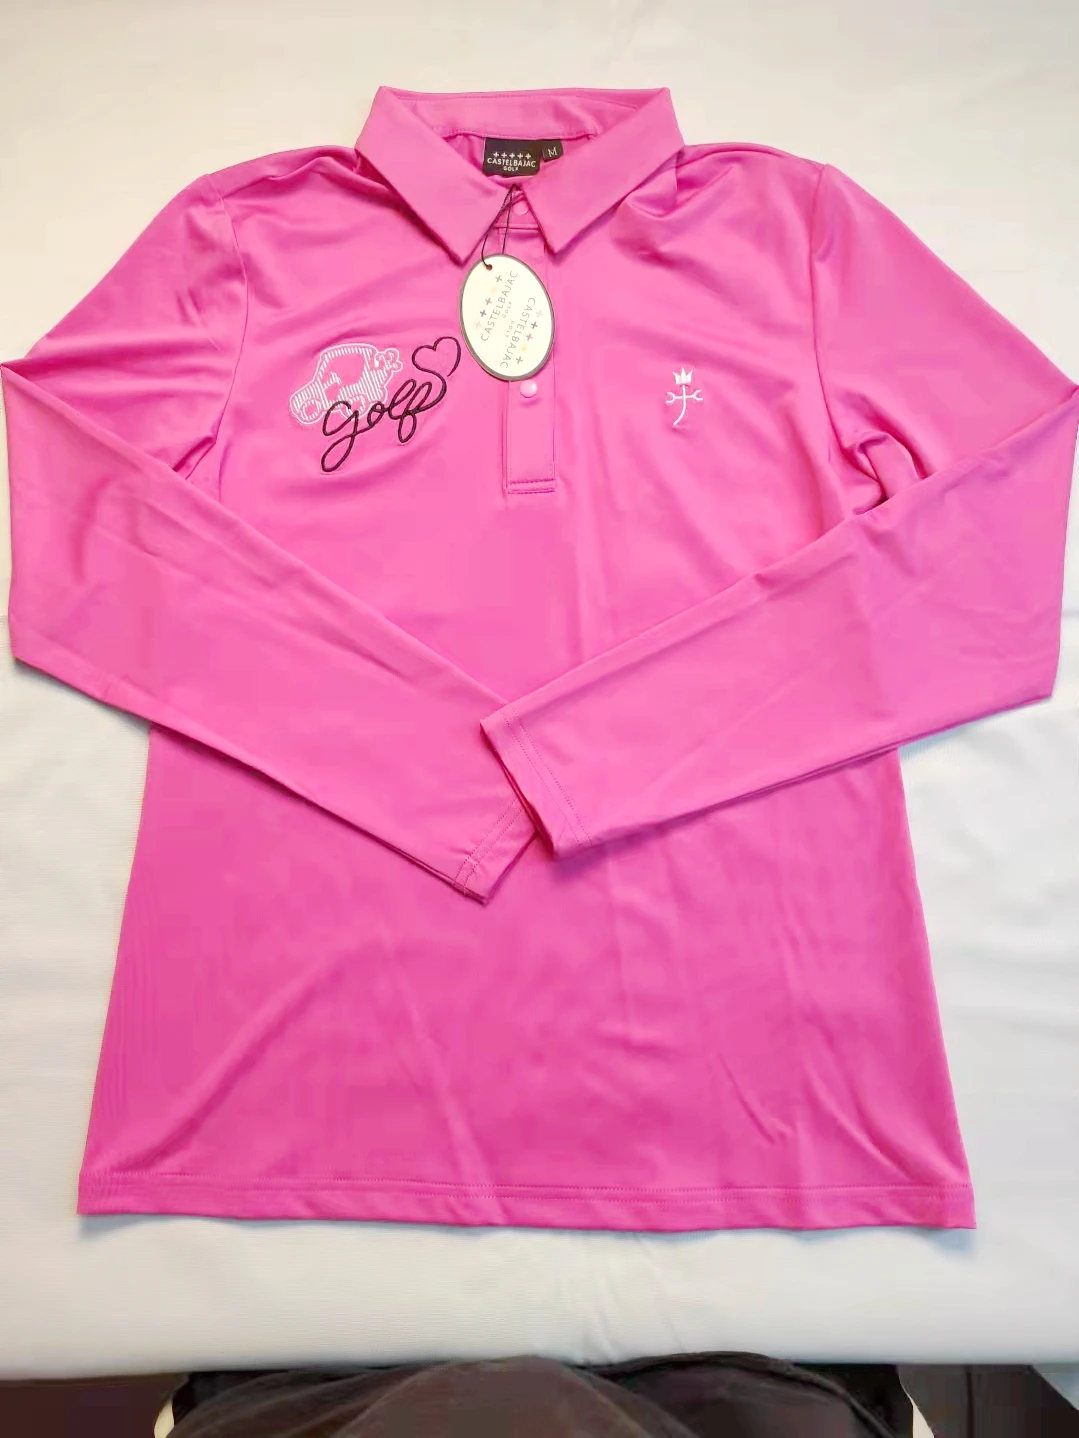 

PG Golf Женская футболка с длинным рукавом осенние и зимние модели облегающая стройнящая эластичная одежда для активного отдыха и спорта в гол...